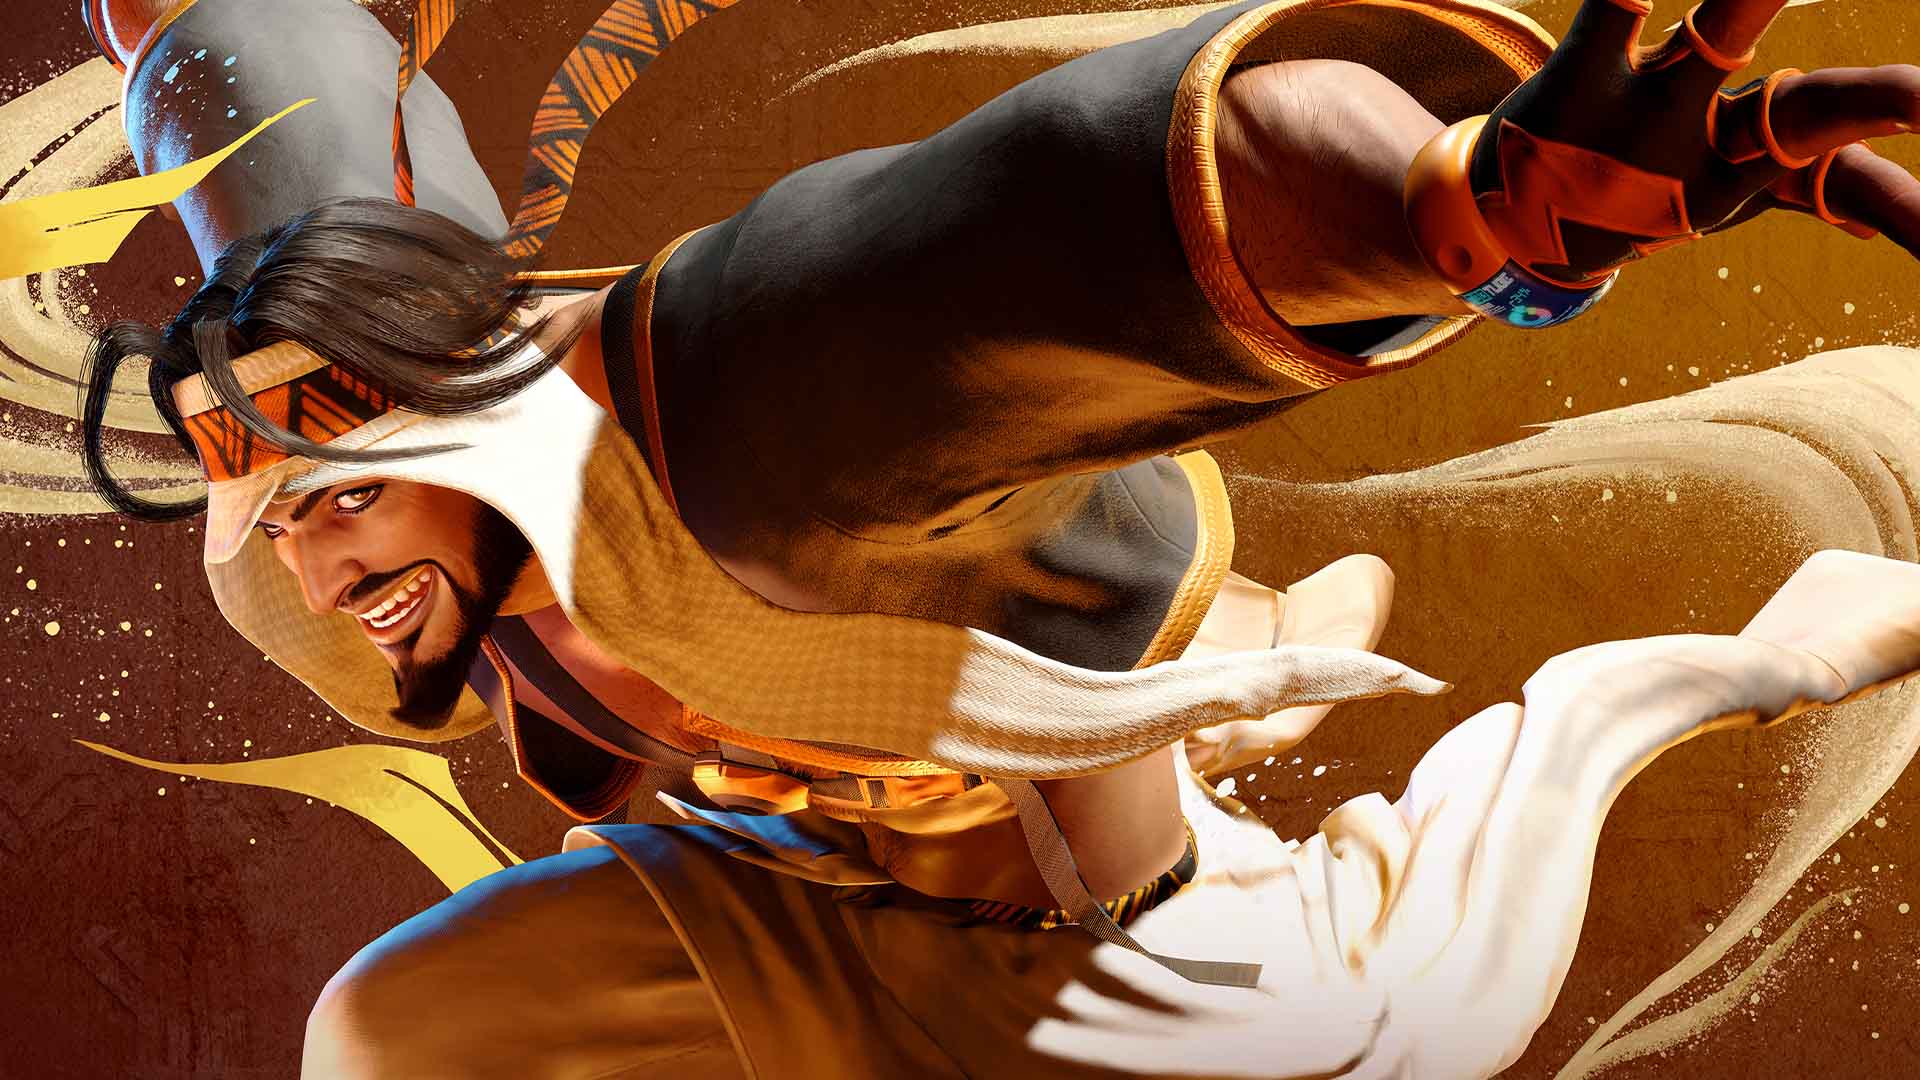 Capcom heeft een trailer vrijgegeven voor de eerste DLC voor Street Fighter 6, die een nieuw personage toevoegt aan het spel - Rashid